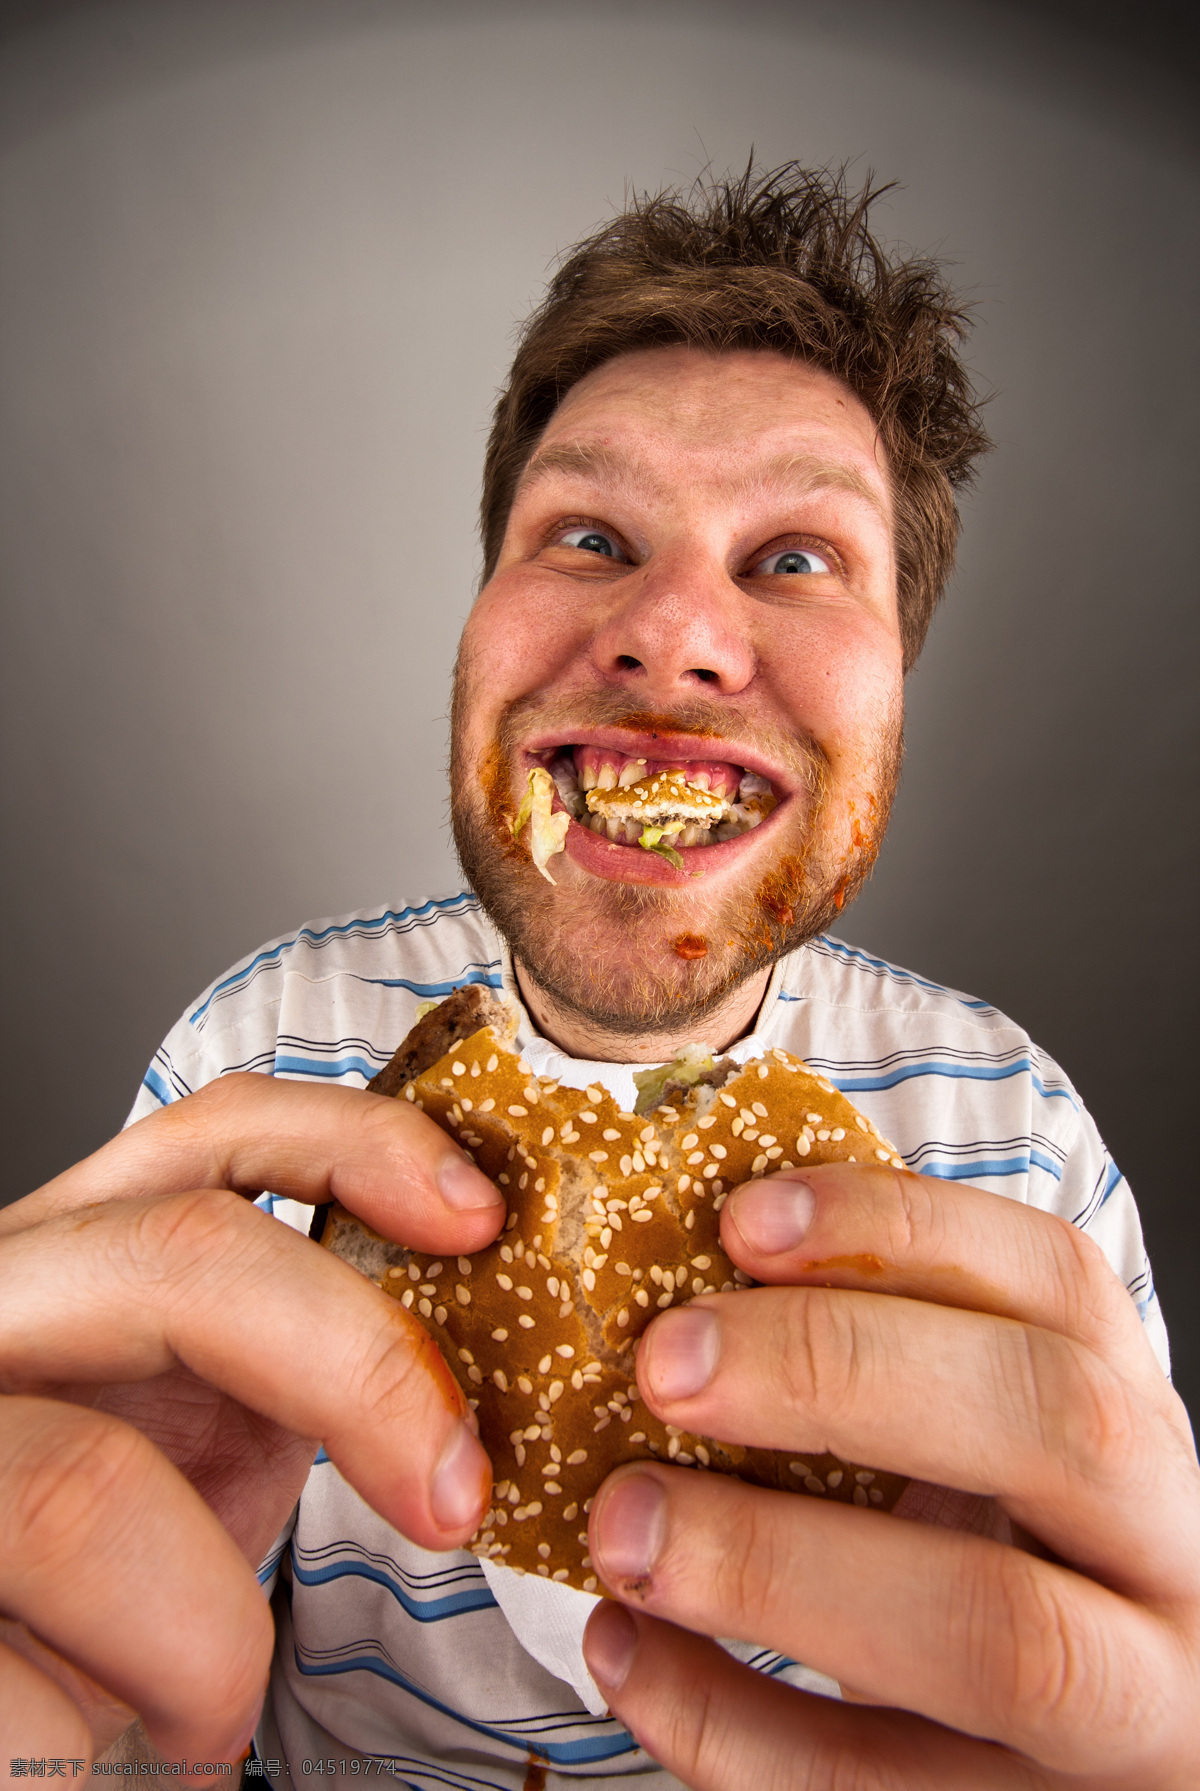 大笑 吃 汉堡 外国人 咆 汉堡包 食物 美食 早餐 吃早餐 吃汉堡包 面包 张大 嘴巴 男人 笑 手握汉堡 生活人物 人物图片